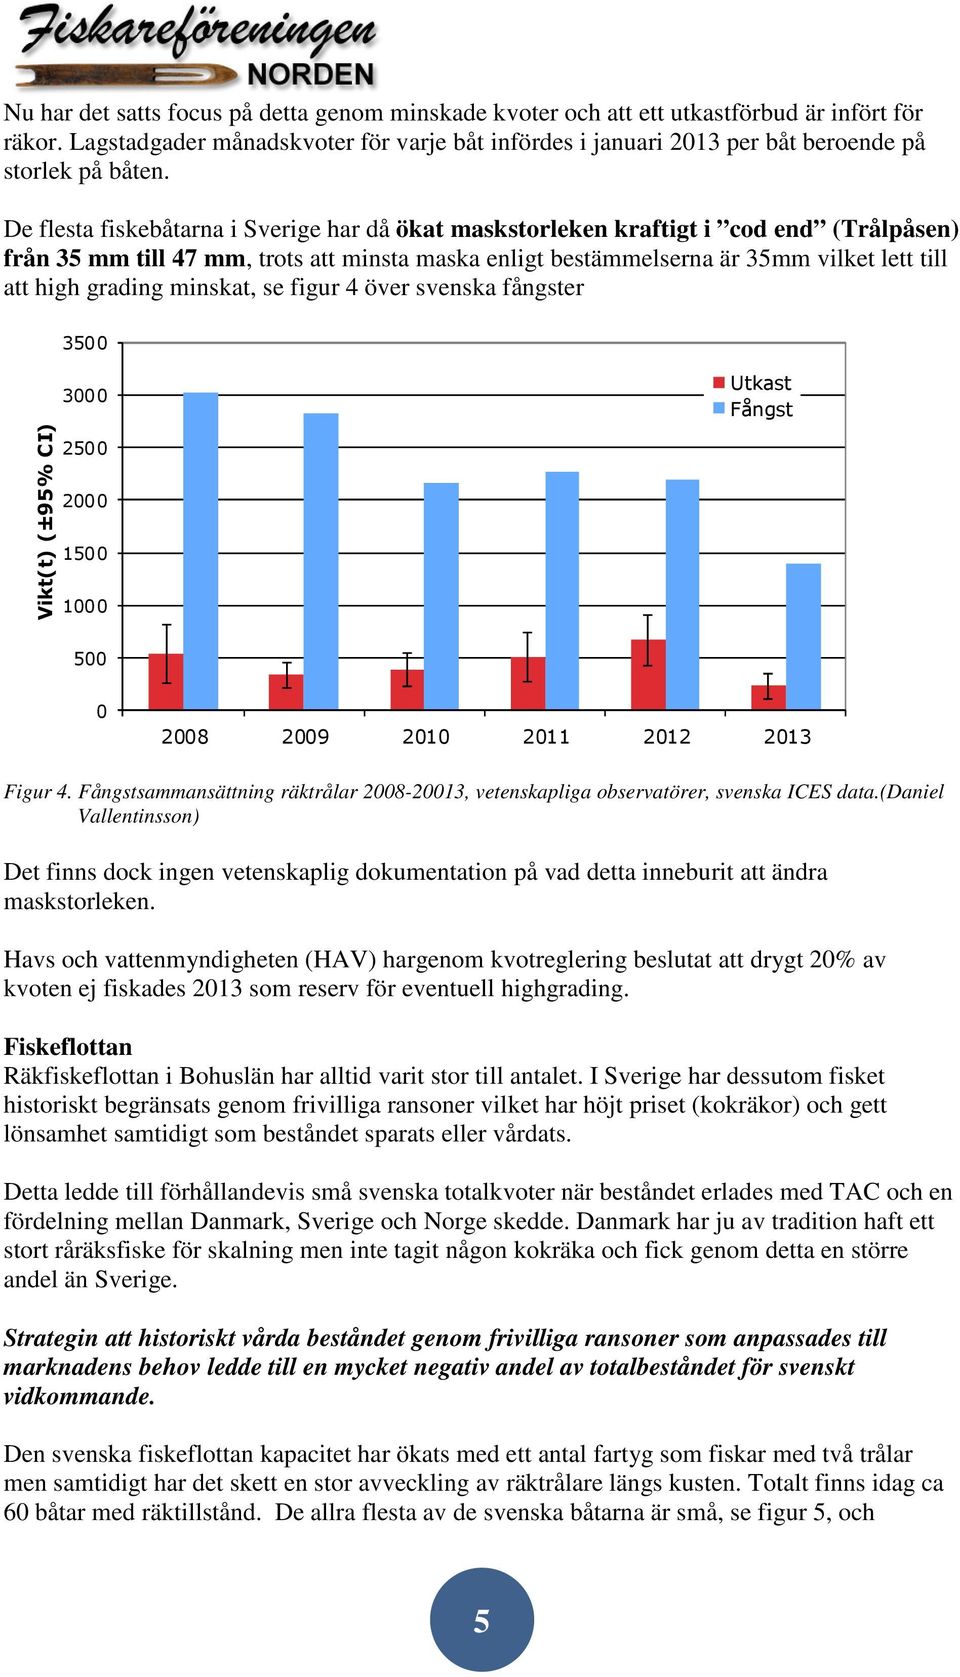 De flesta fiskebåtarna i Sverige har då ökat maskstorleken kraftigt i cod end (Trålpåsen) från 35 mm till 47 mm, trots att minsta maska enligt bestämmelserna är 35mm vilket lett till att high grading